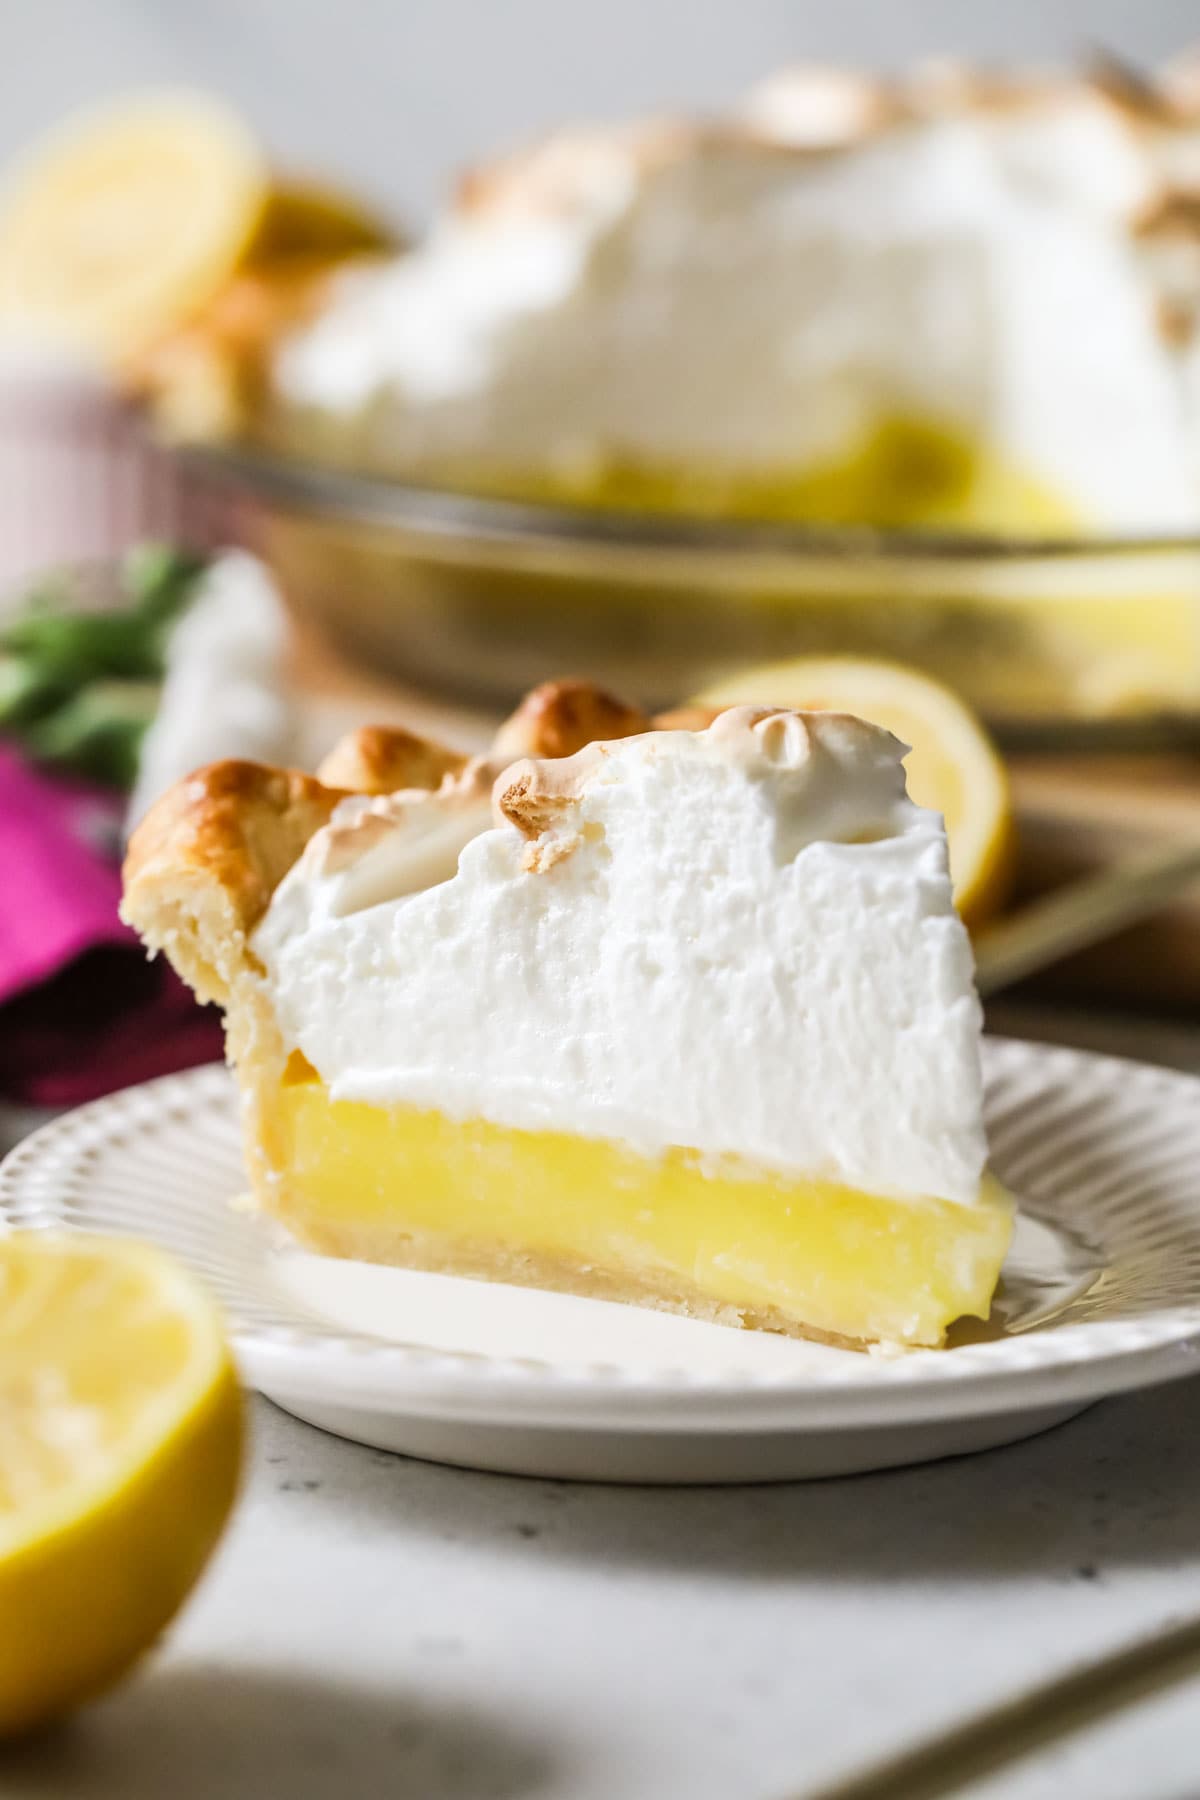 Slice of lemon meringue pie on a plate.